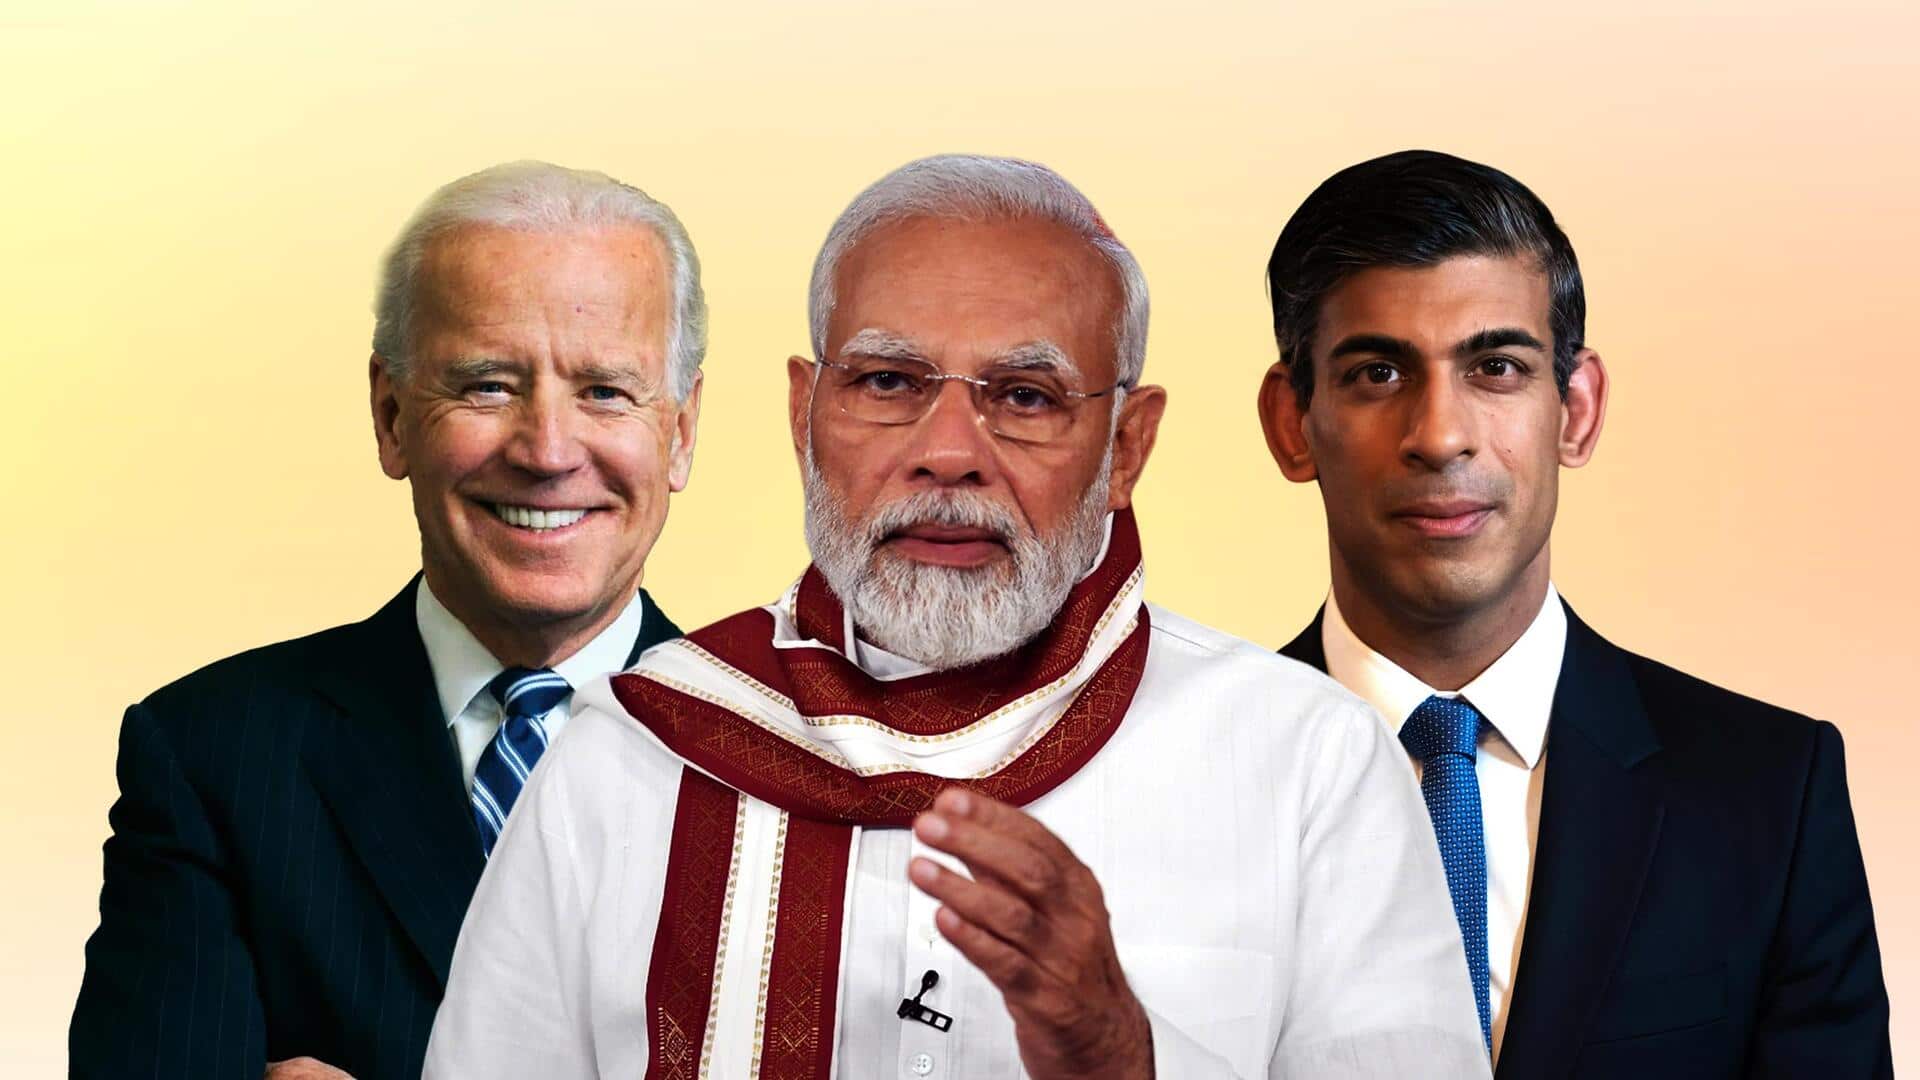 G-20 शिखर सम्मेलन: प्रधानमंत्री मोदी ने किया वैश्विक नेताओं का स्वागत, जानें आज का कार्यक्रम